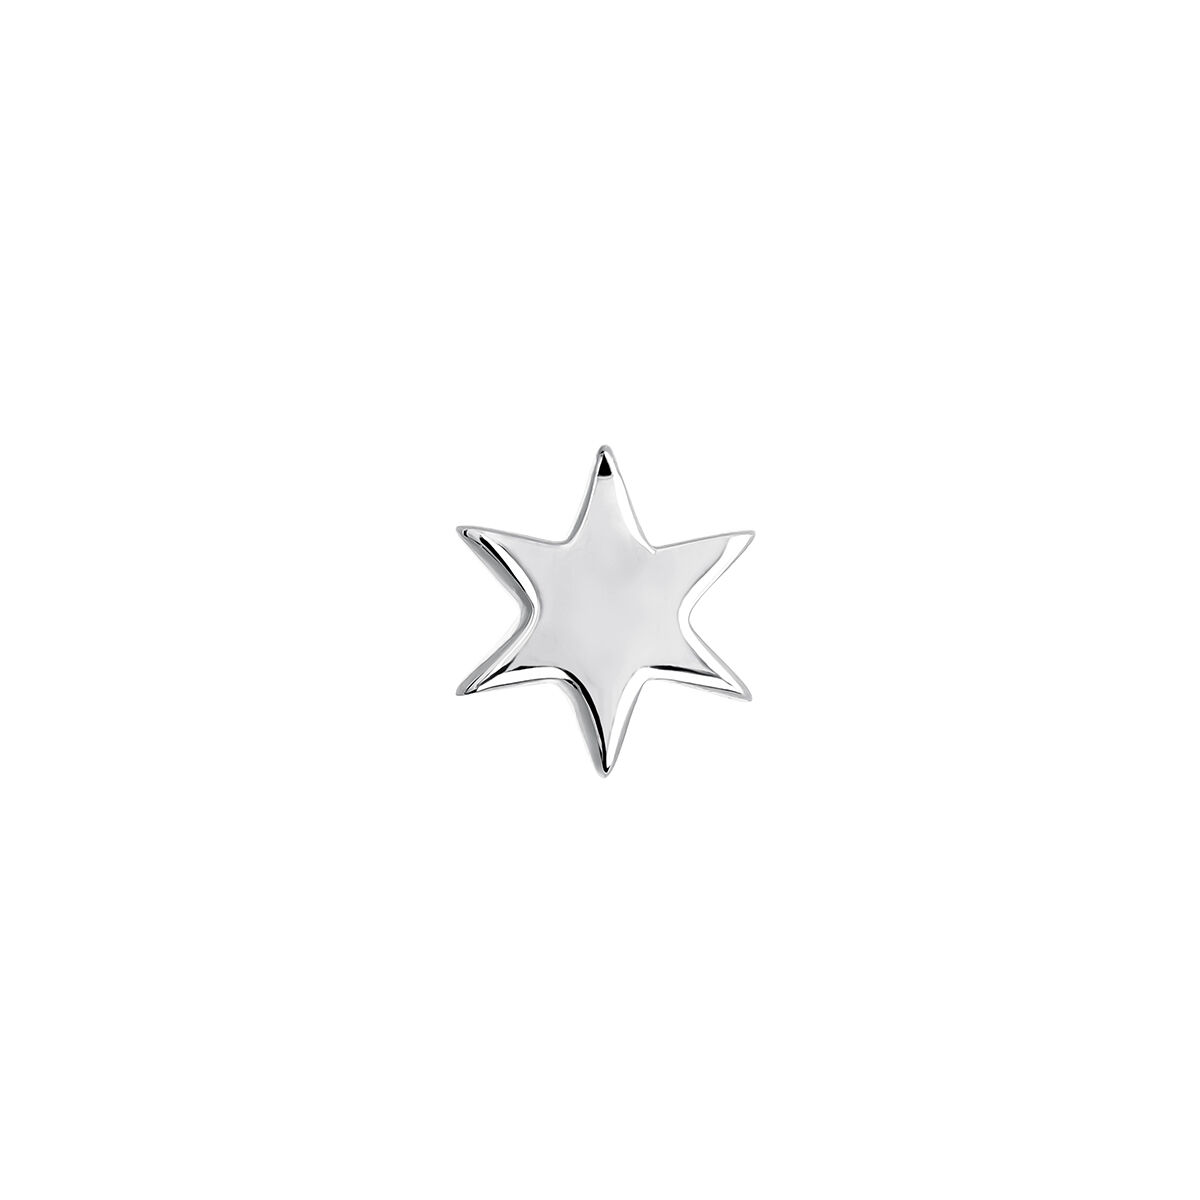 Piercing estrella oro blanco 9 kt , J03834-01-H, hi-res